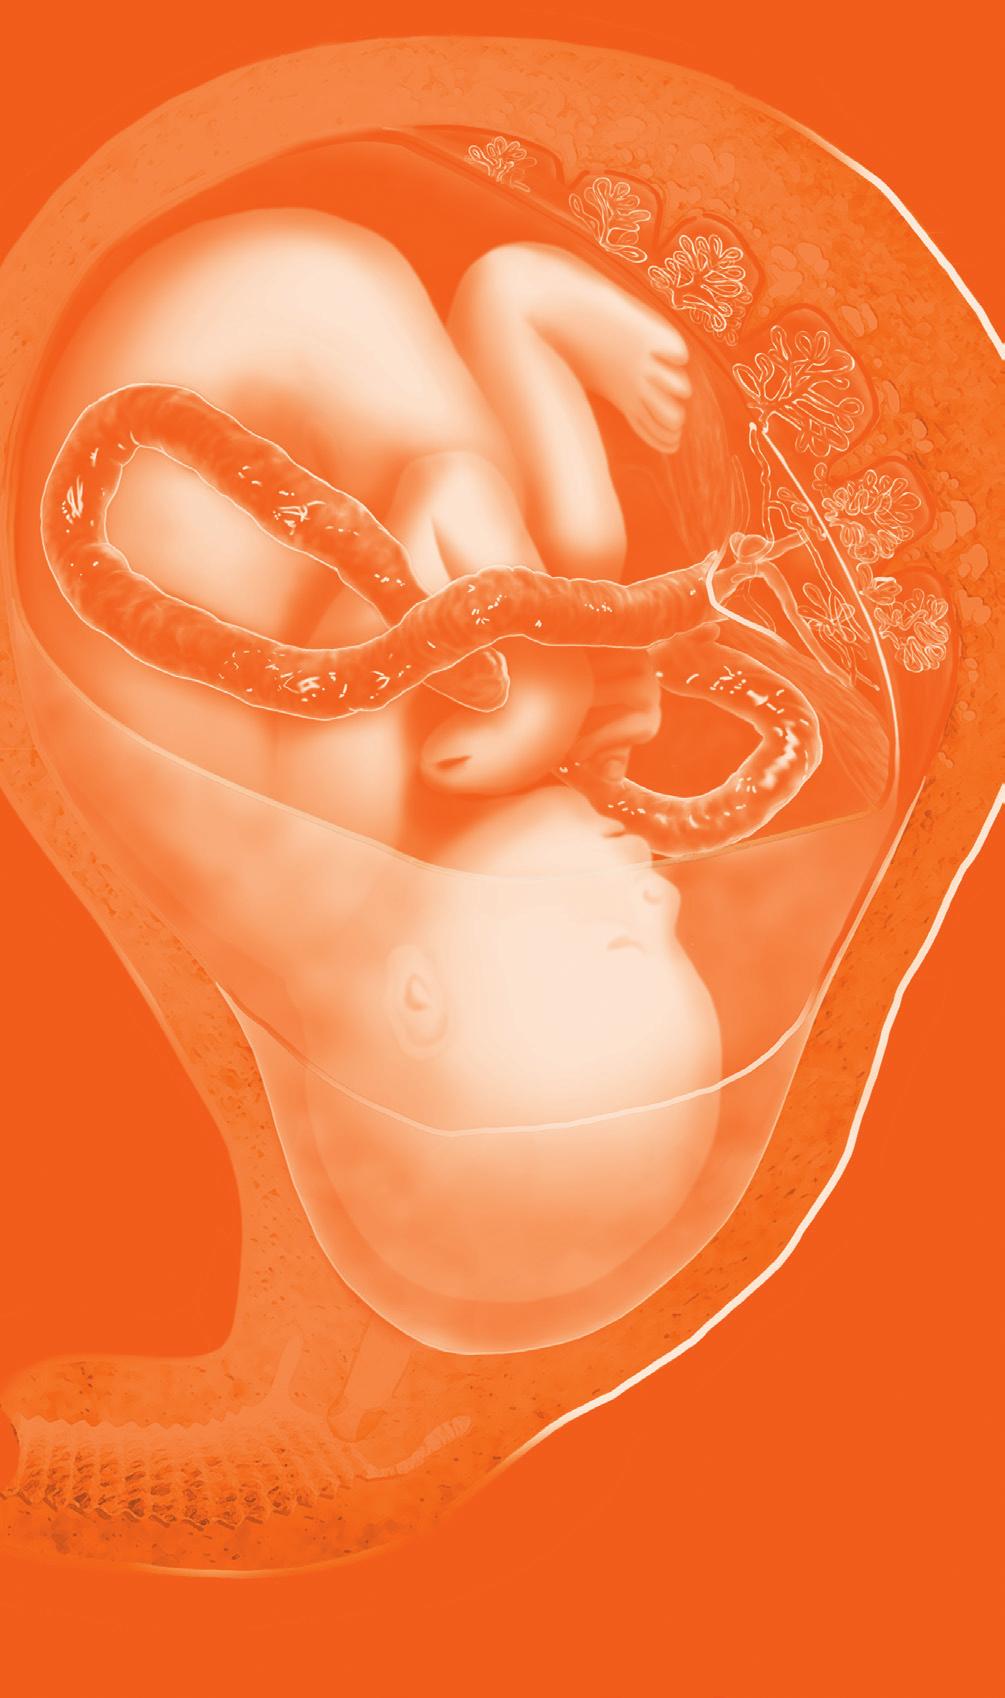 Fábio Roberto Cabar A fecundação acontece a partir da fusão dos pró- -núcleos, masculino e feminino, formando o zigoto.